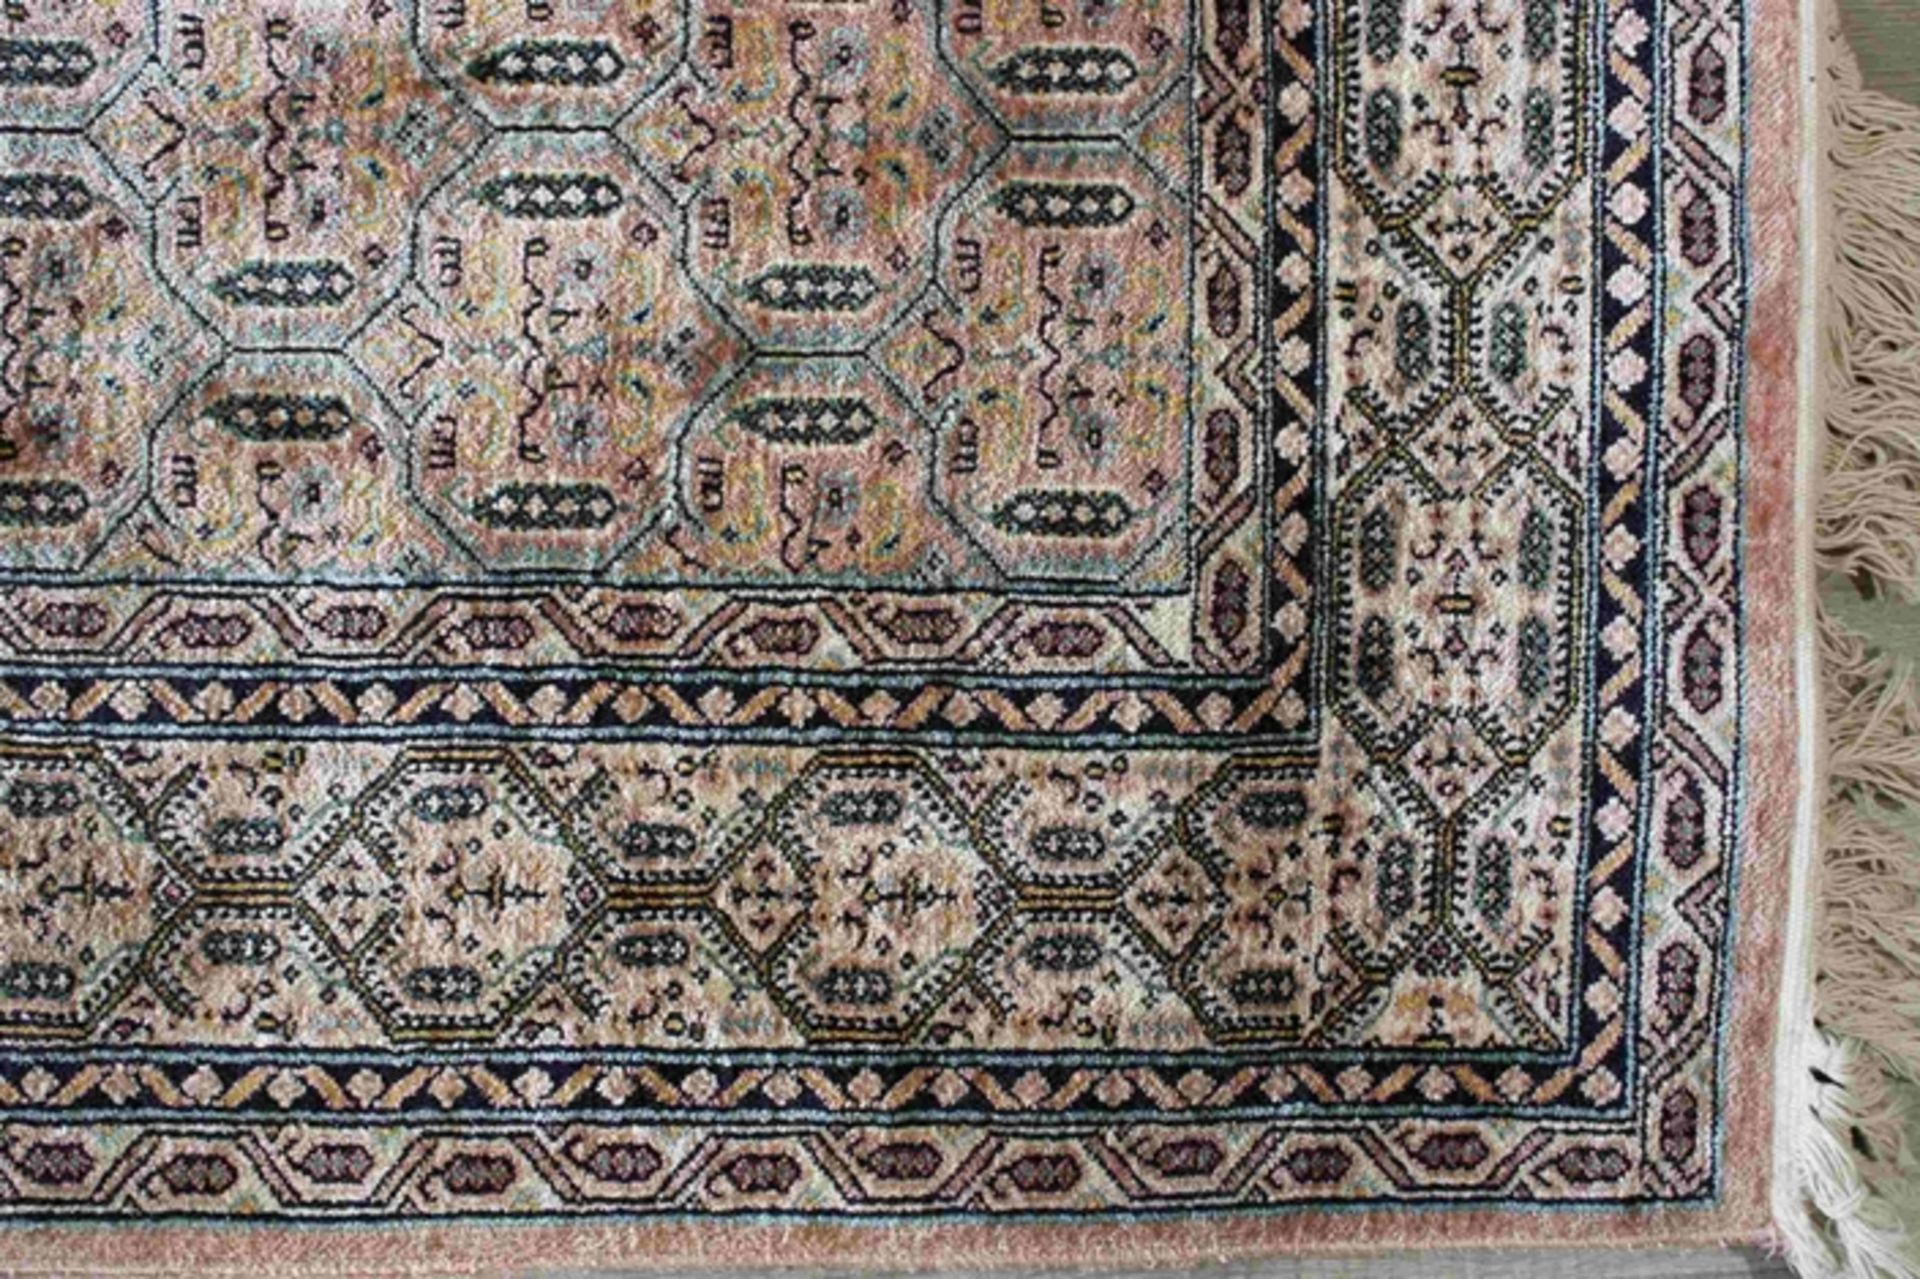 Kashmir-Seide, Indische Teppiche, Maße: 188 x 270 cm. Guter Zustand, Fleckig. - Bild 2 aus 3